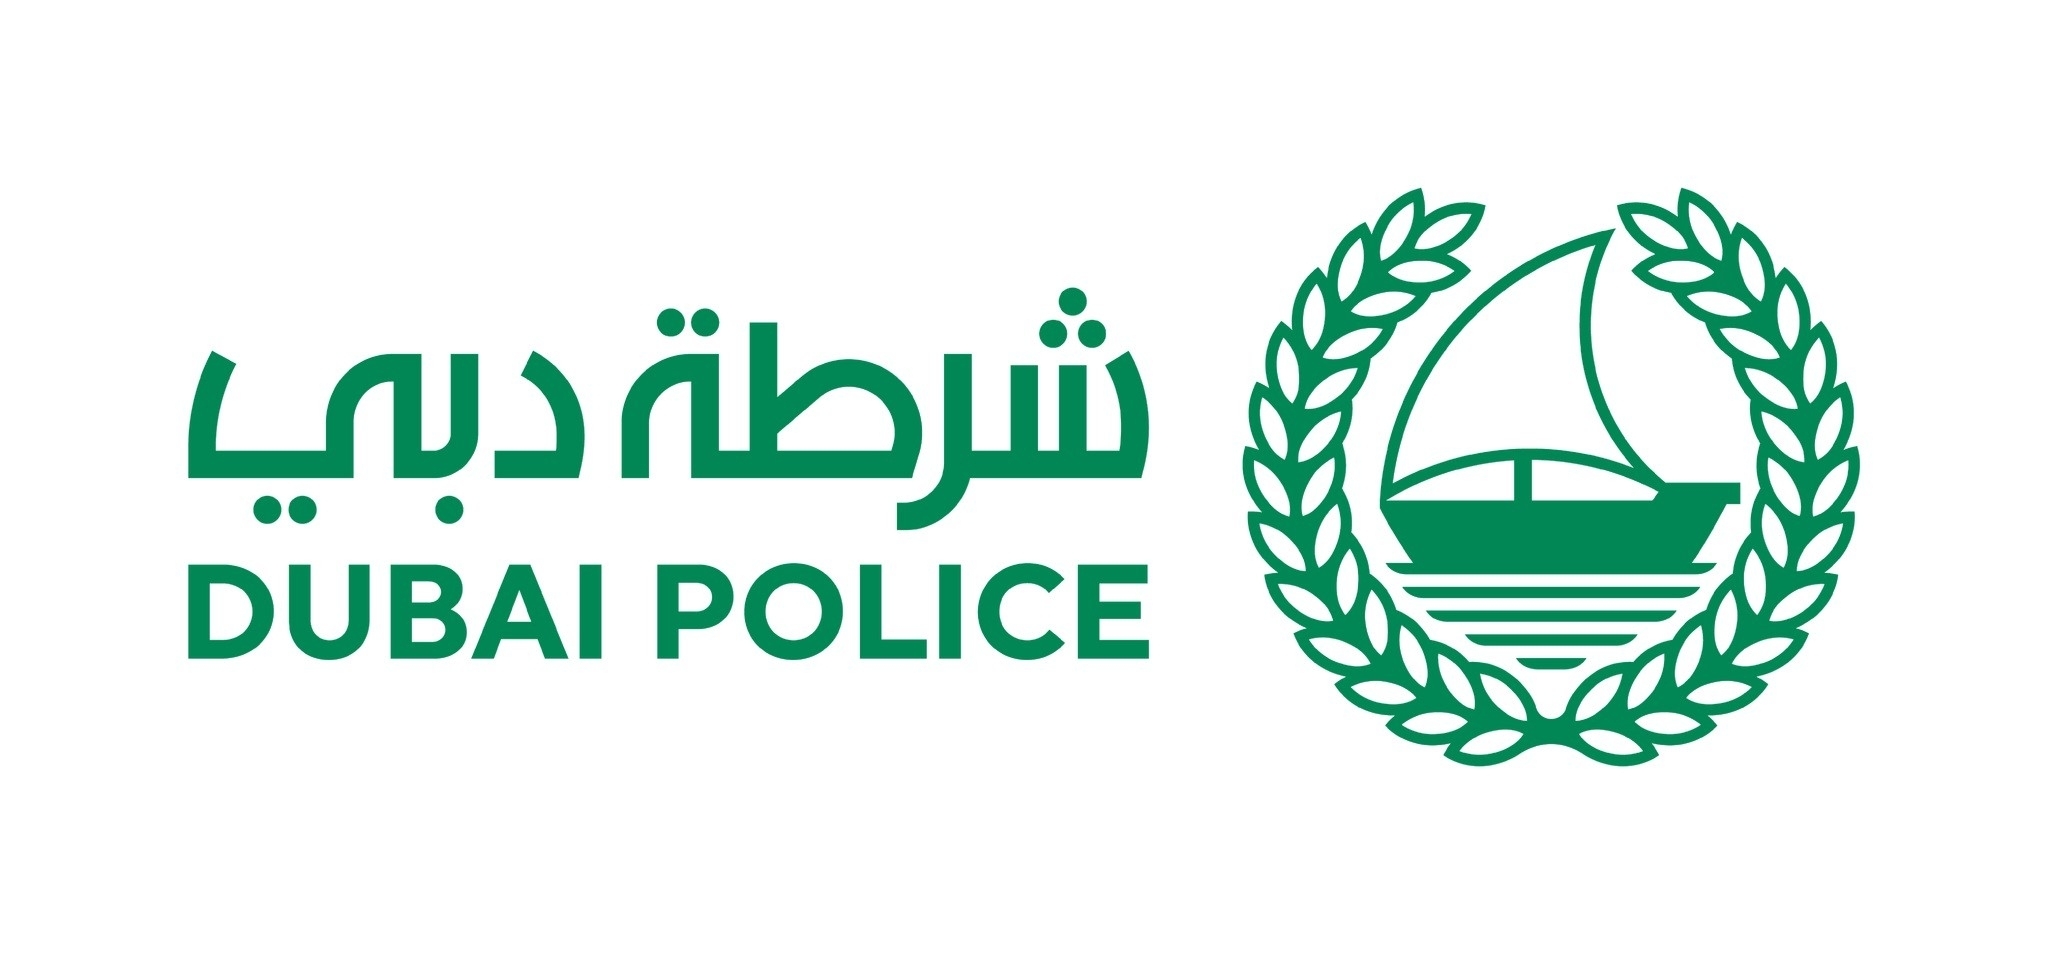 شرطة دبي تحصل على مواصفة التميز الدولي